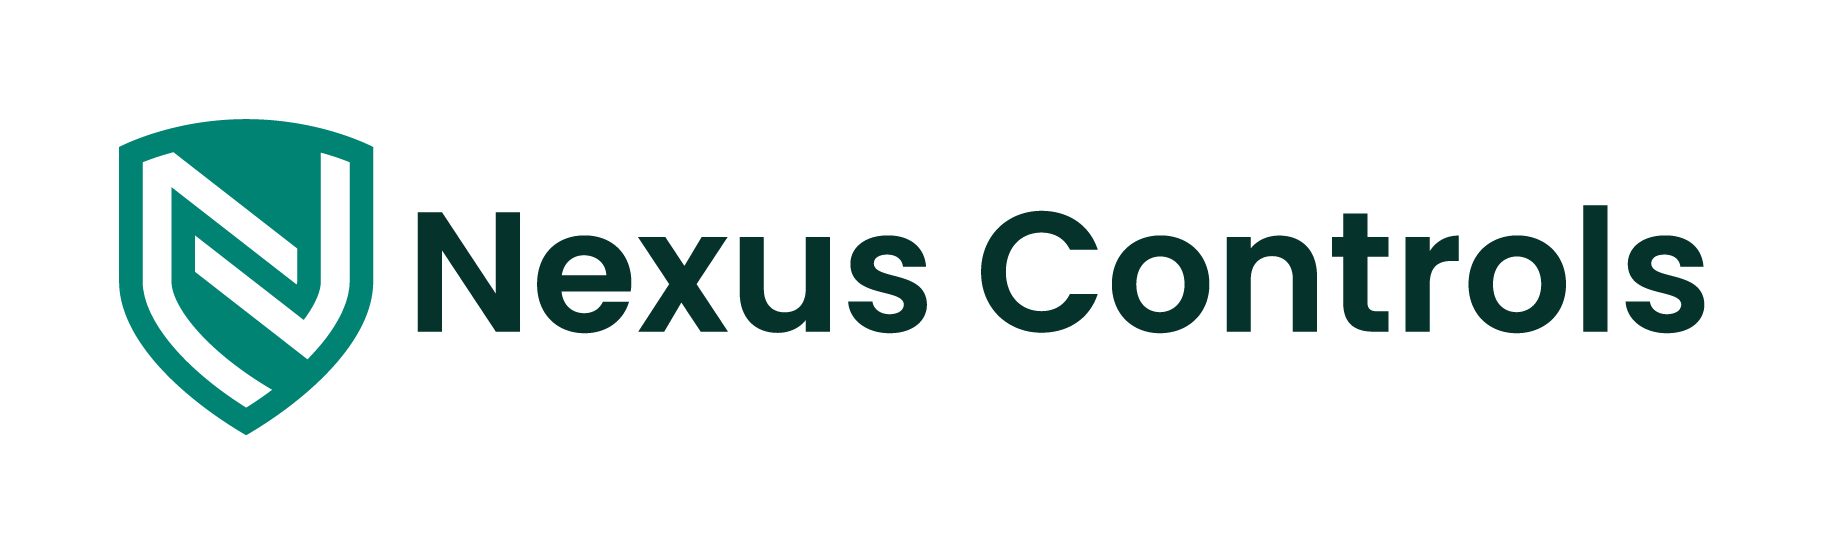 Nexus Controls Home